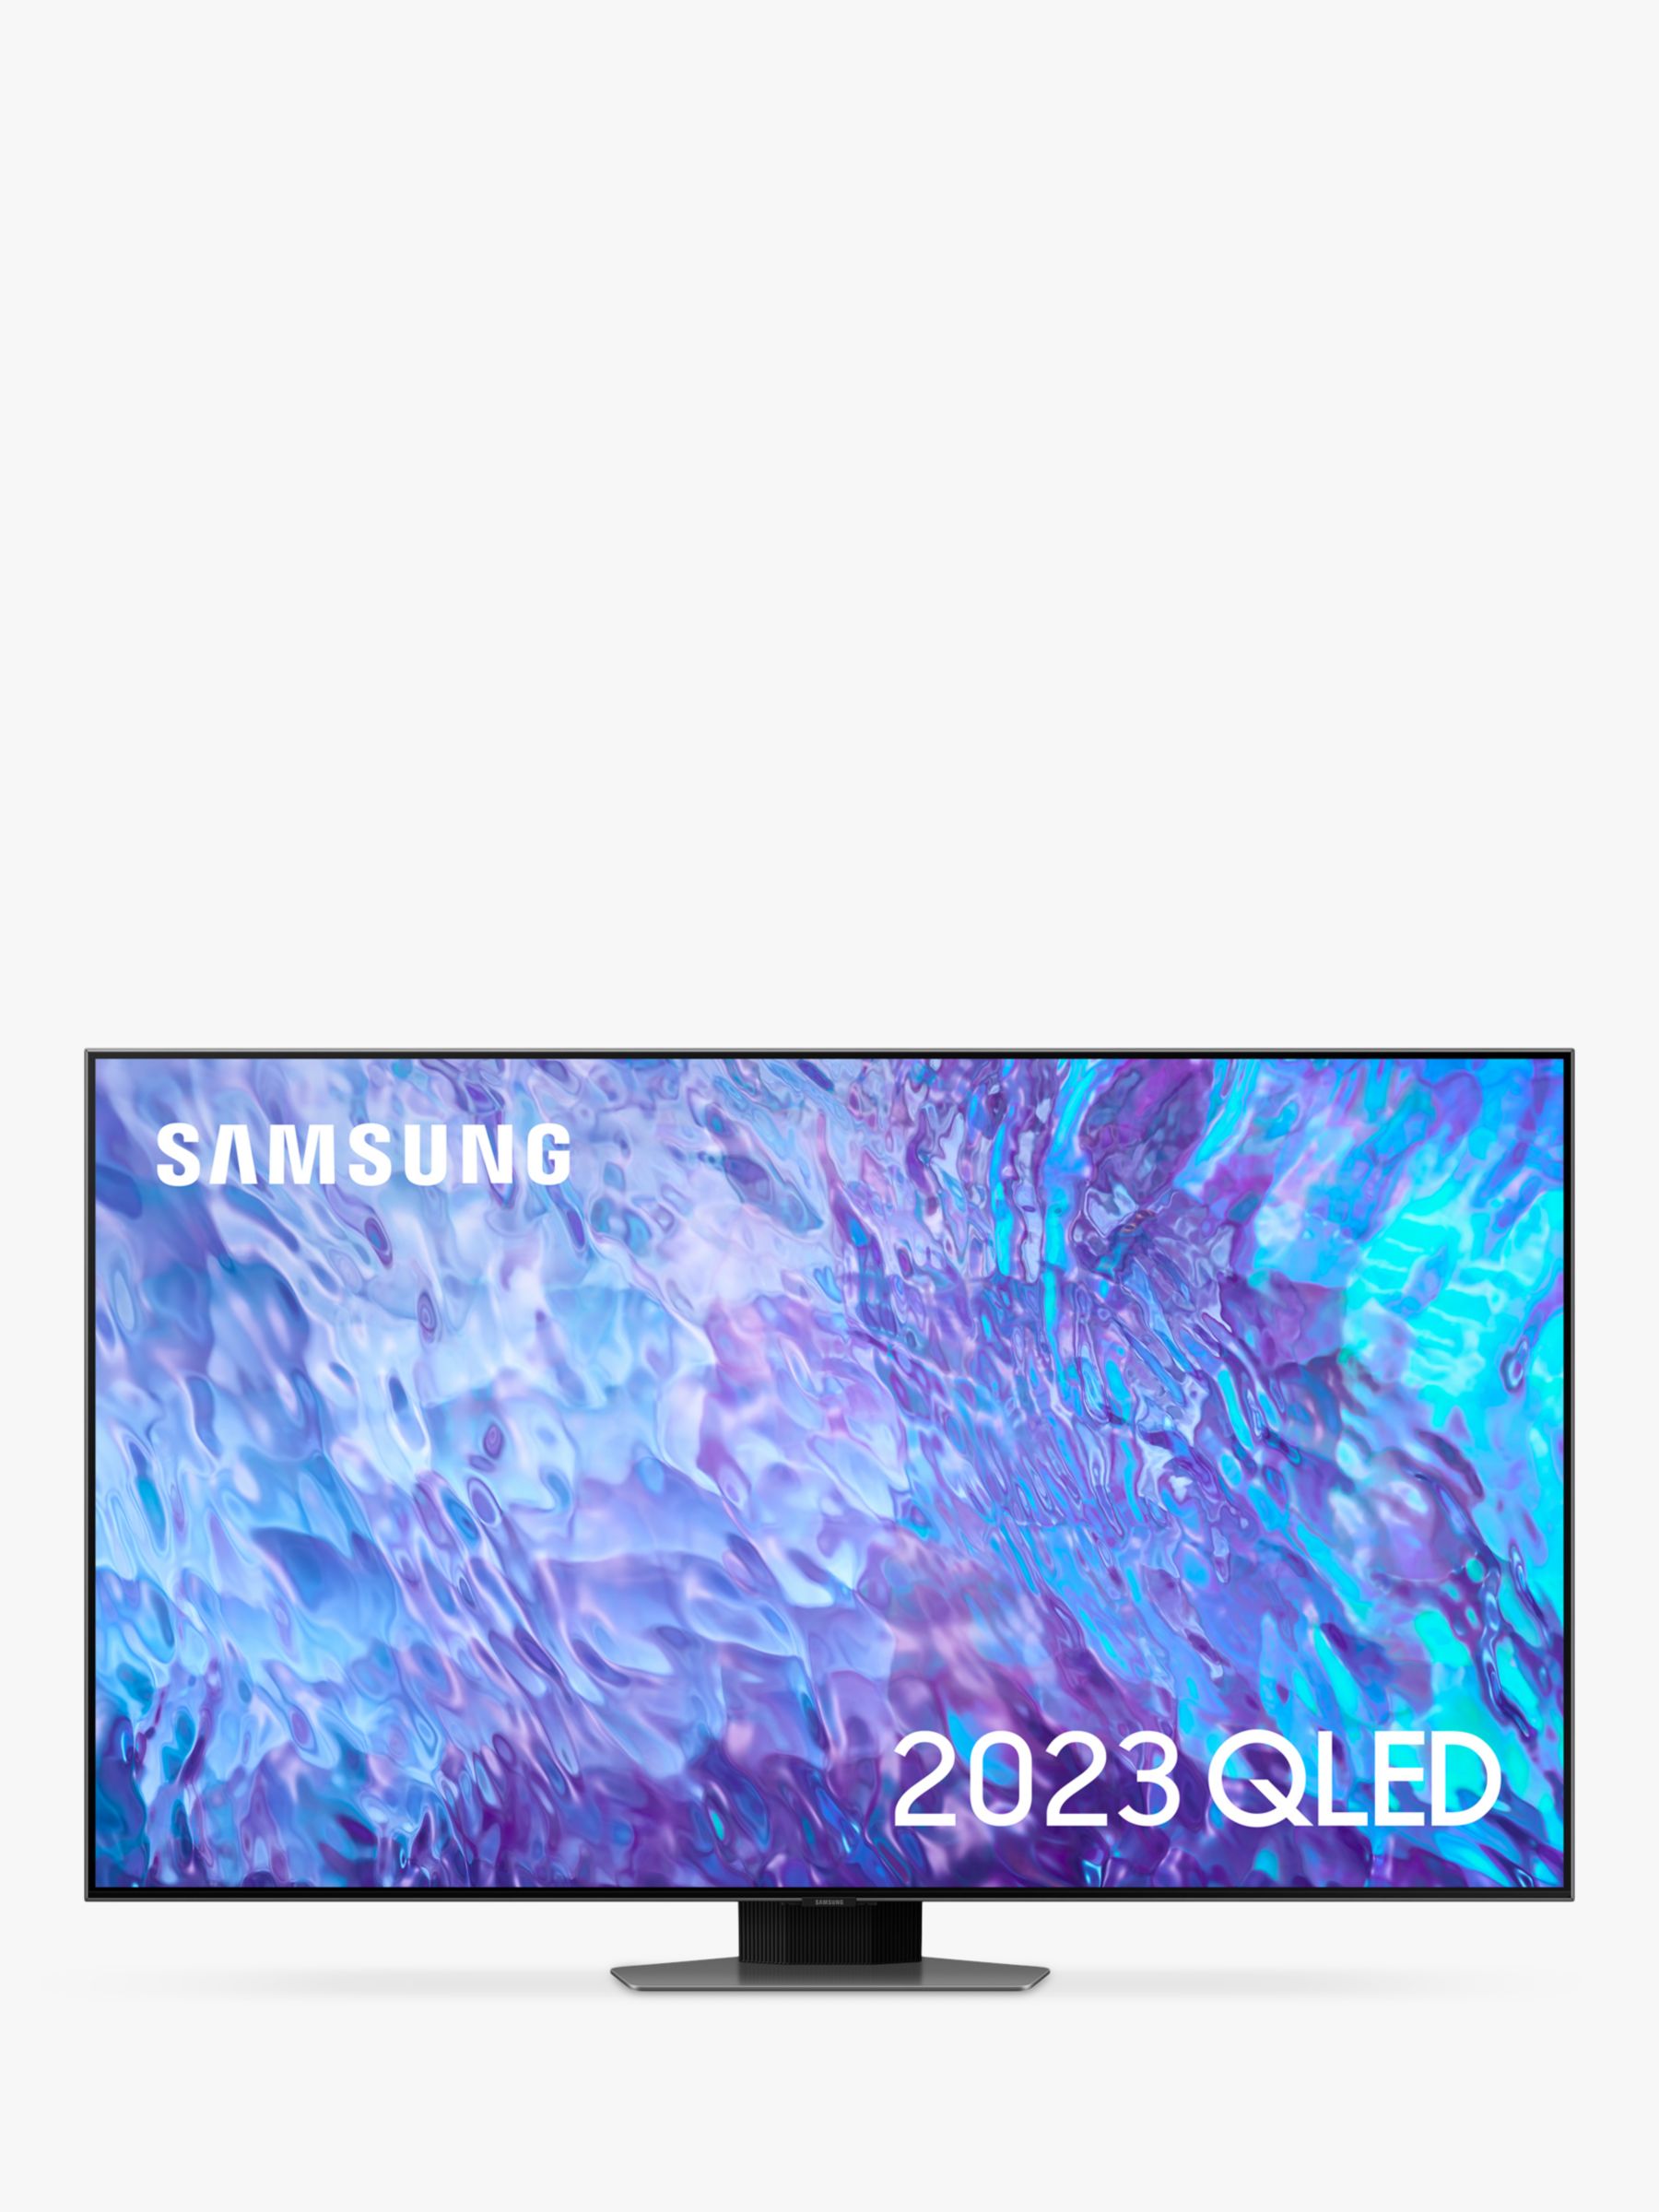 Samsung 65 Inch TVs in Samsung TVs 